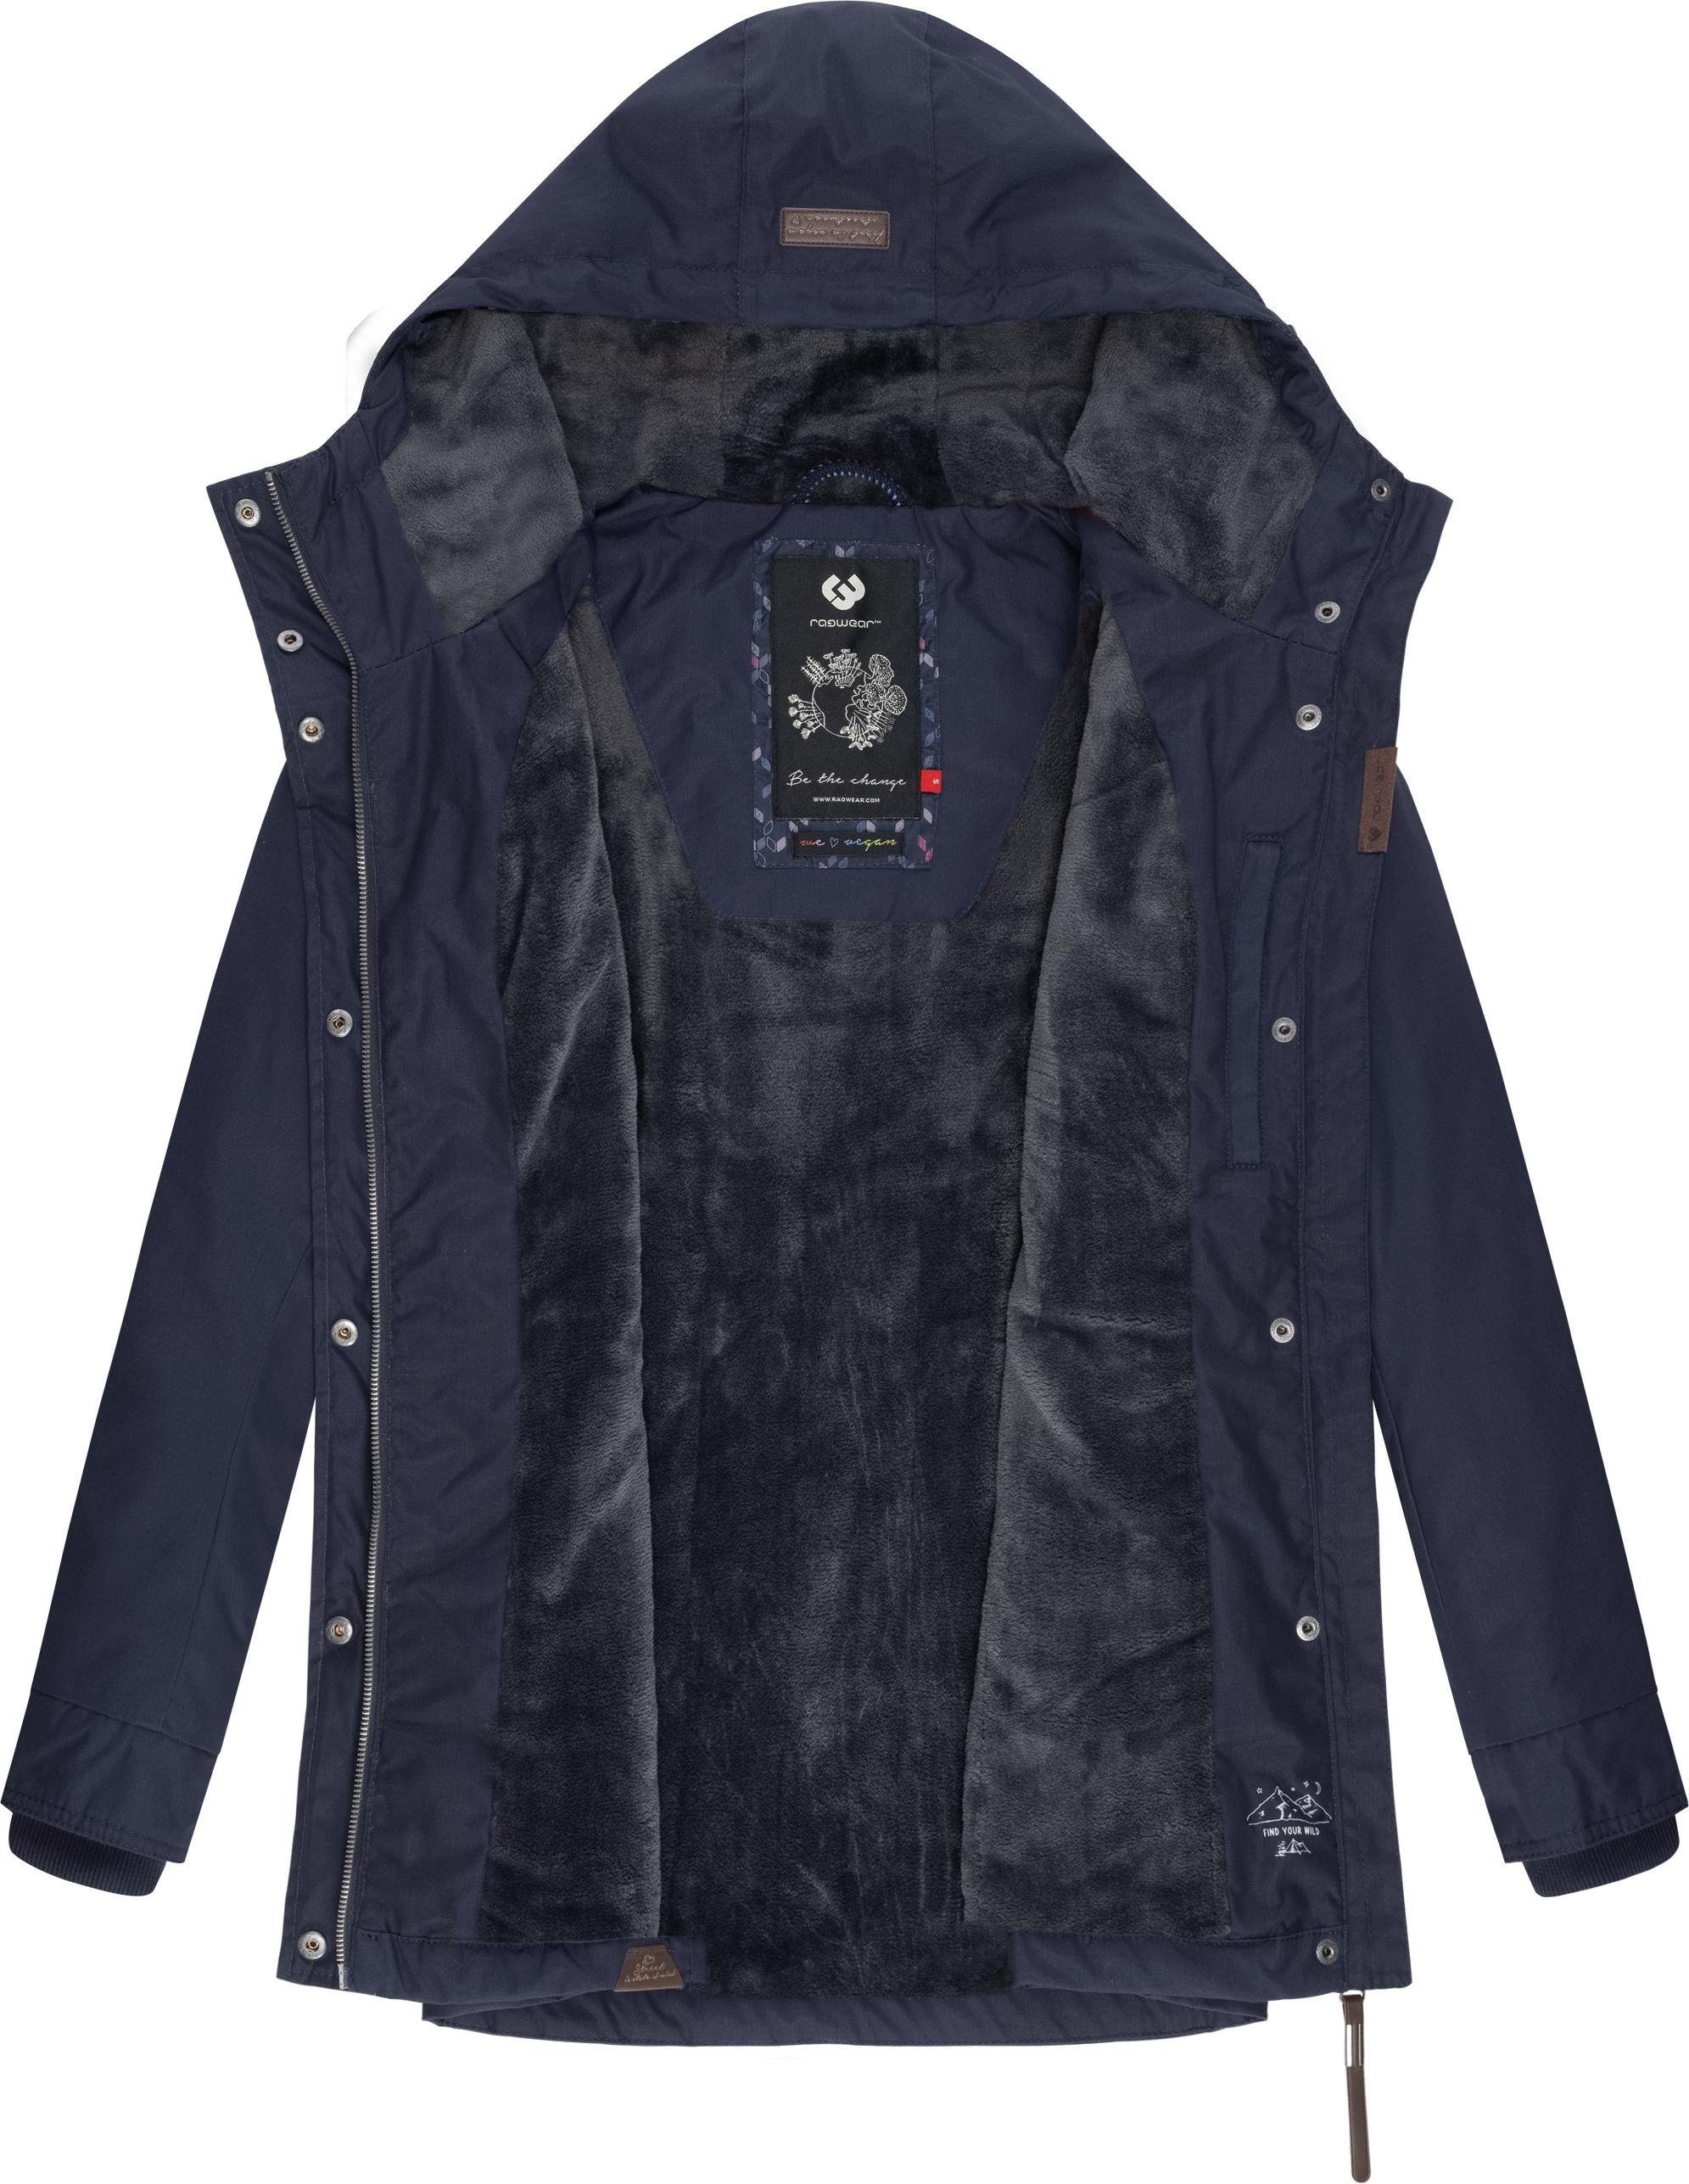 Ragwear Winterjacke Monadis jeansblau die Jahreszeit kalte Label Winterparka für stylischer Black